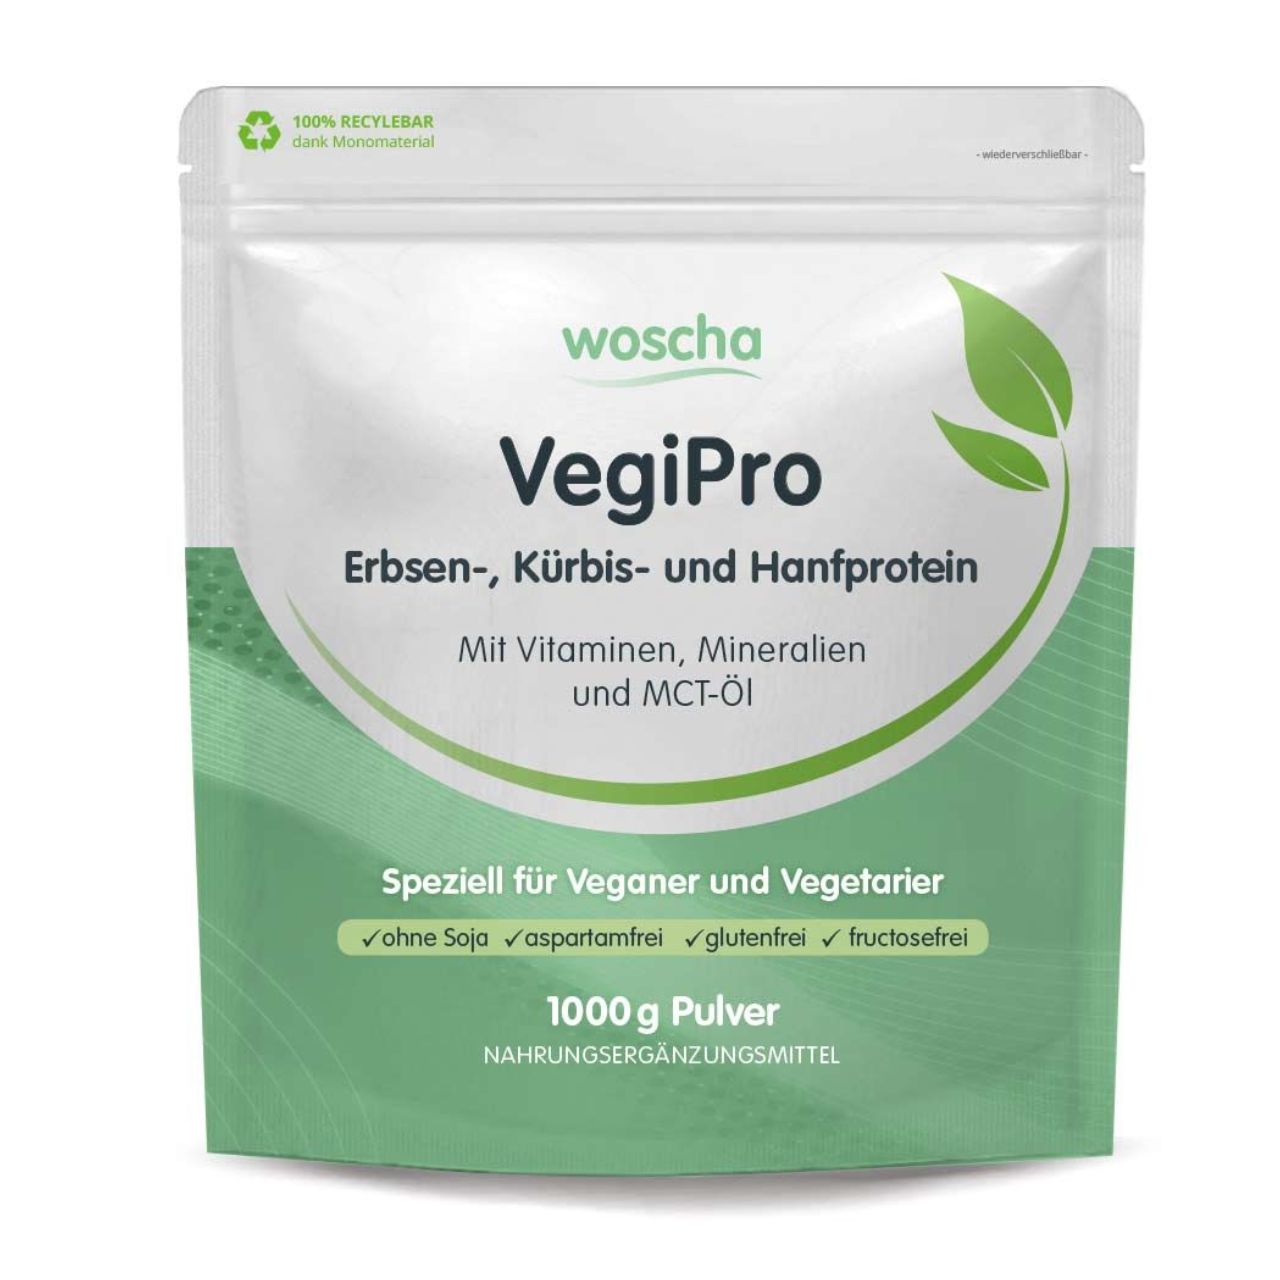 VegiPro Erbsen-, Kürbis- und Hanfprotein, 1000 g Pulver